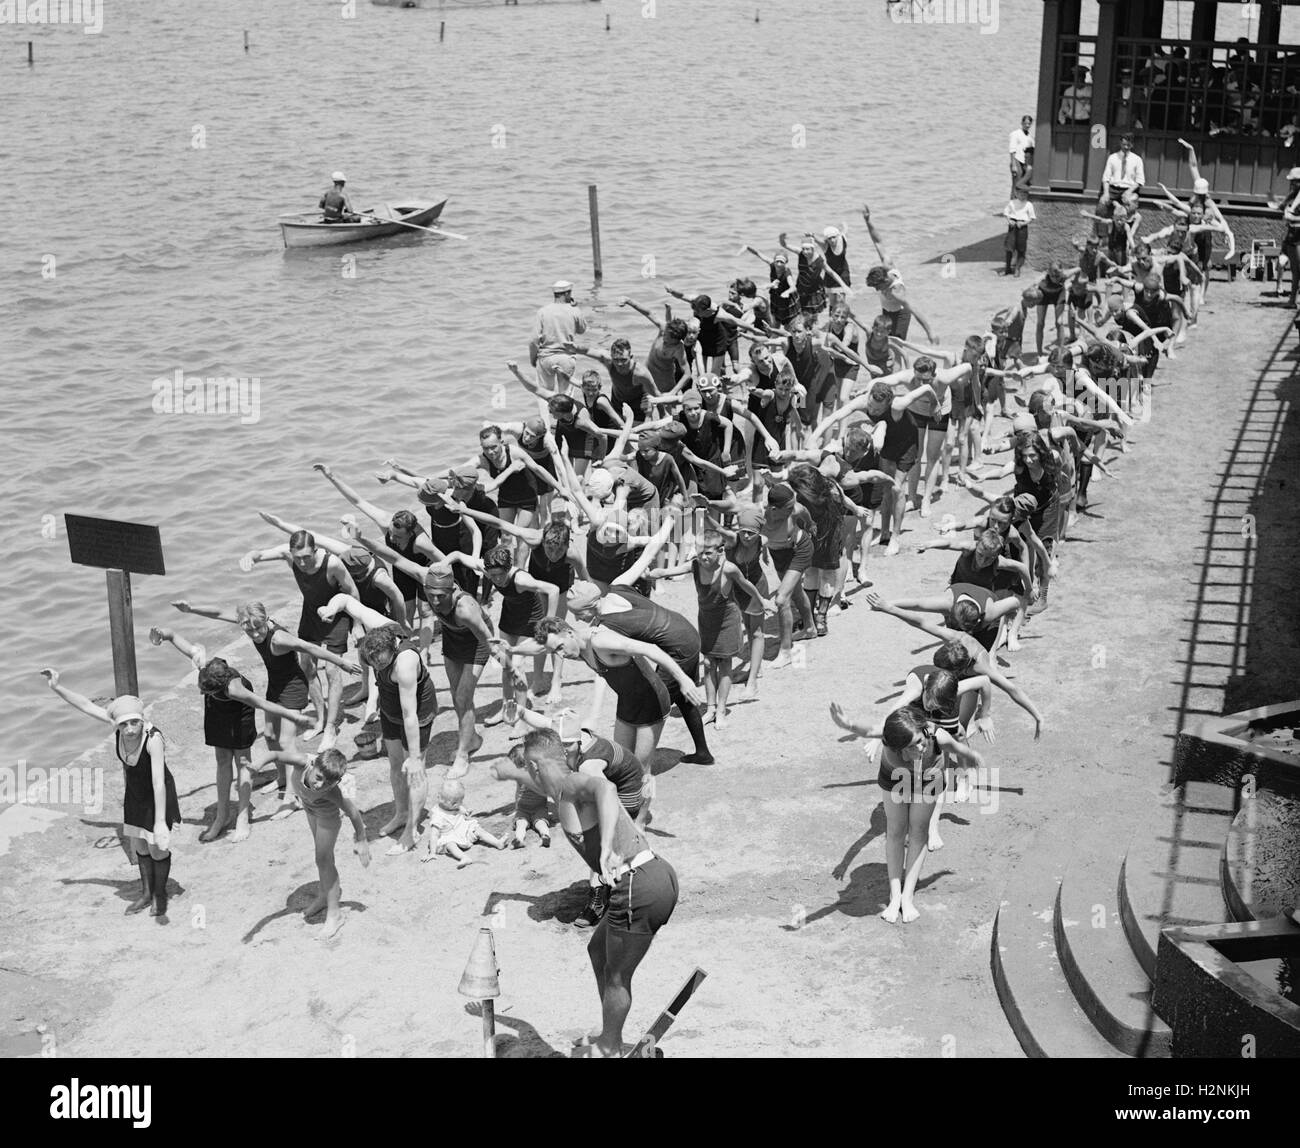 Des cours de natation à la plage de baignade, Washington DC, USA, National Photo Company, juillet 1922 Banque D'Images